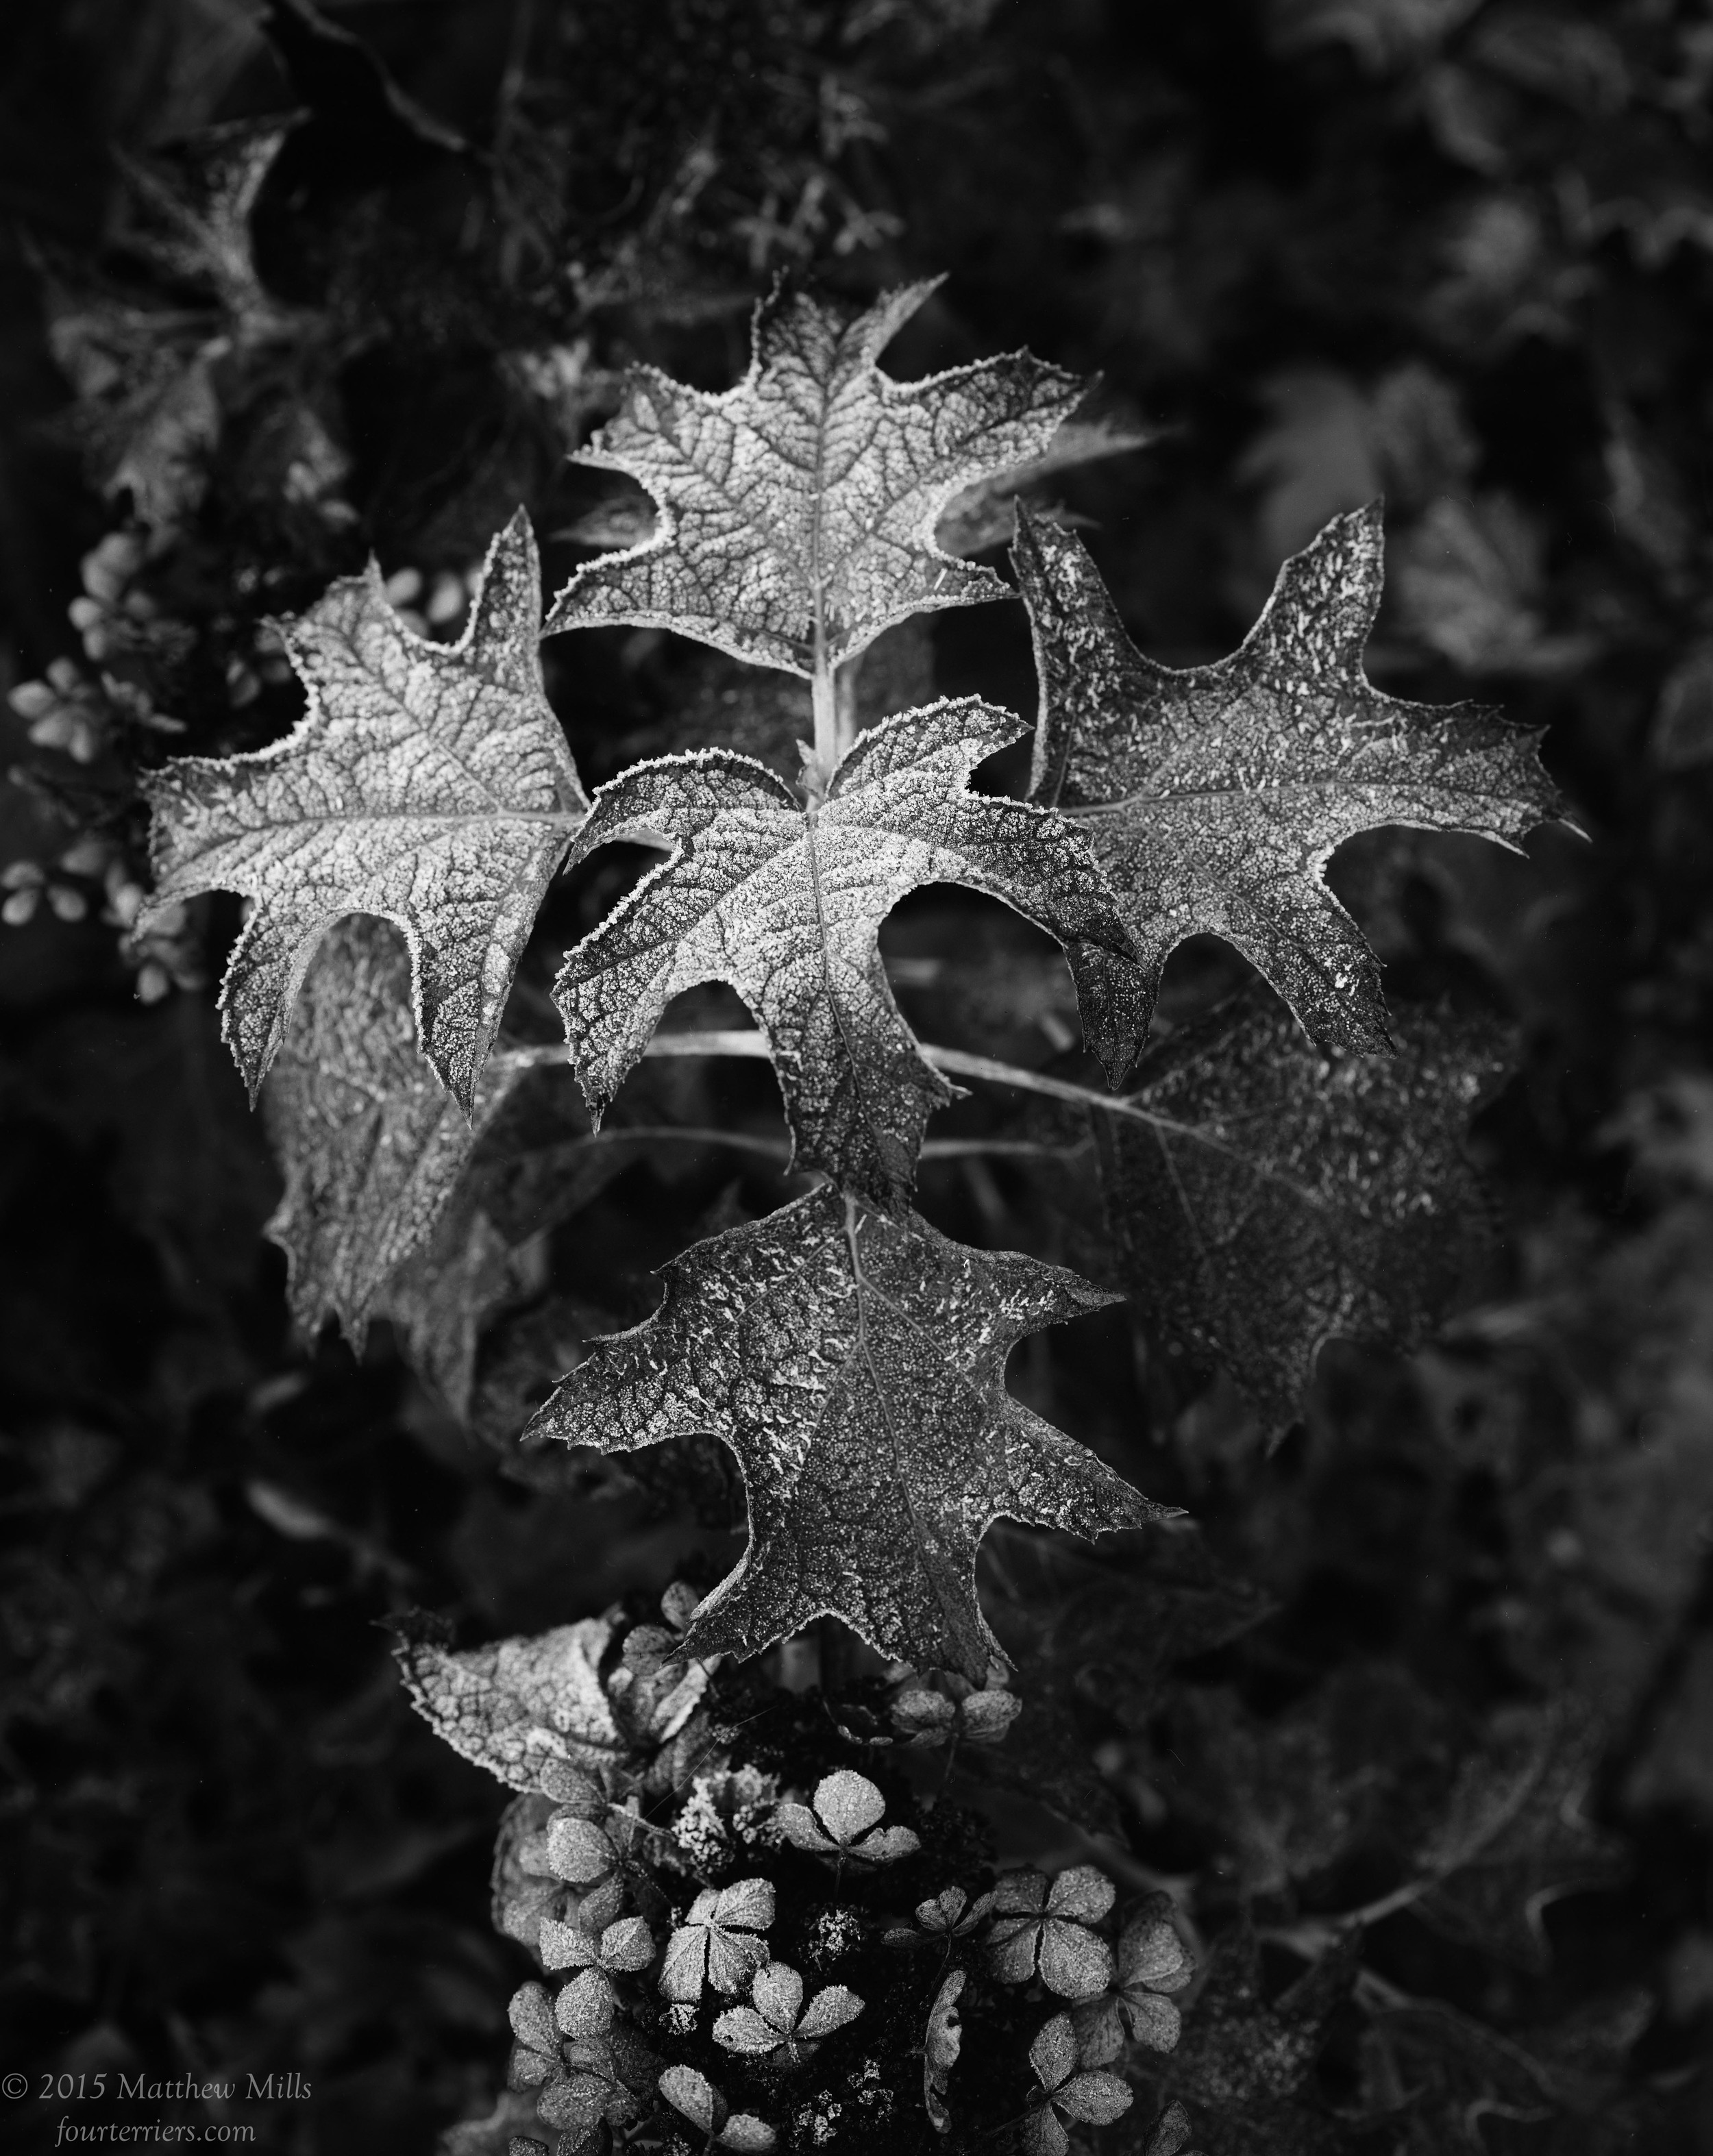 Oak Leaf Hydrangea in Frost, Fall 2015